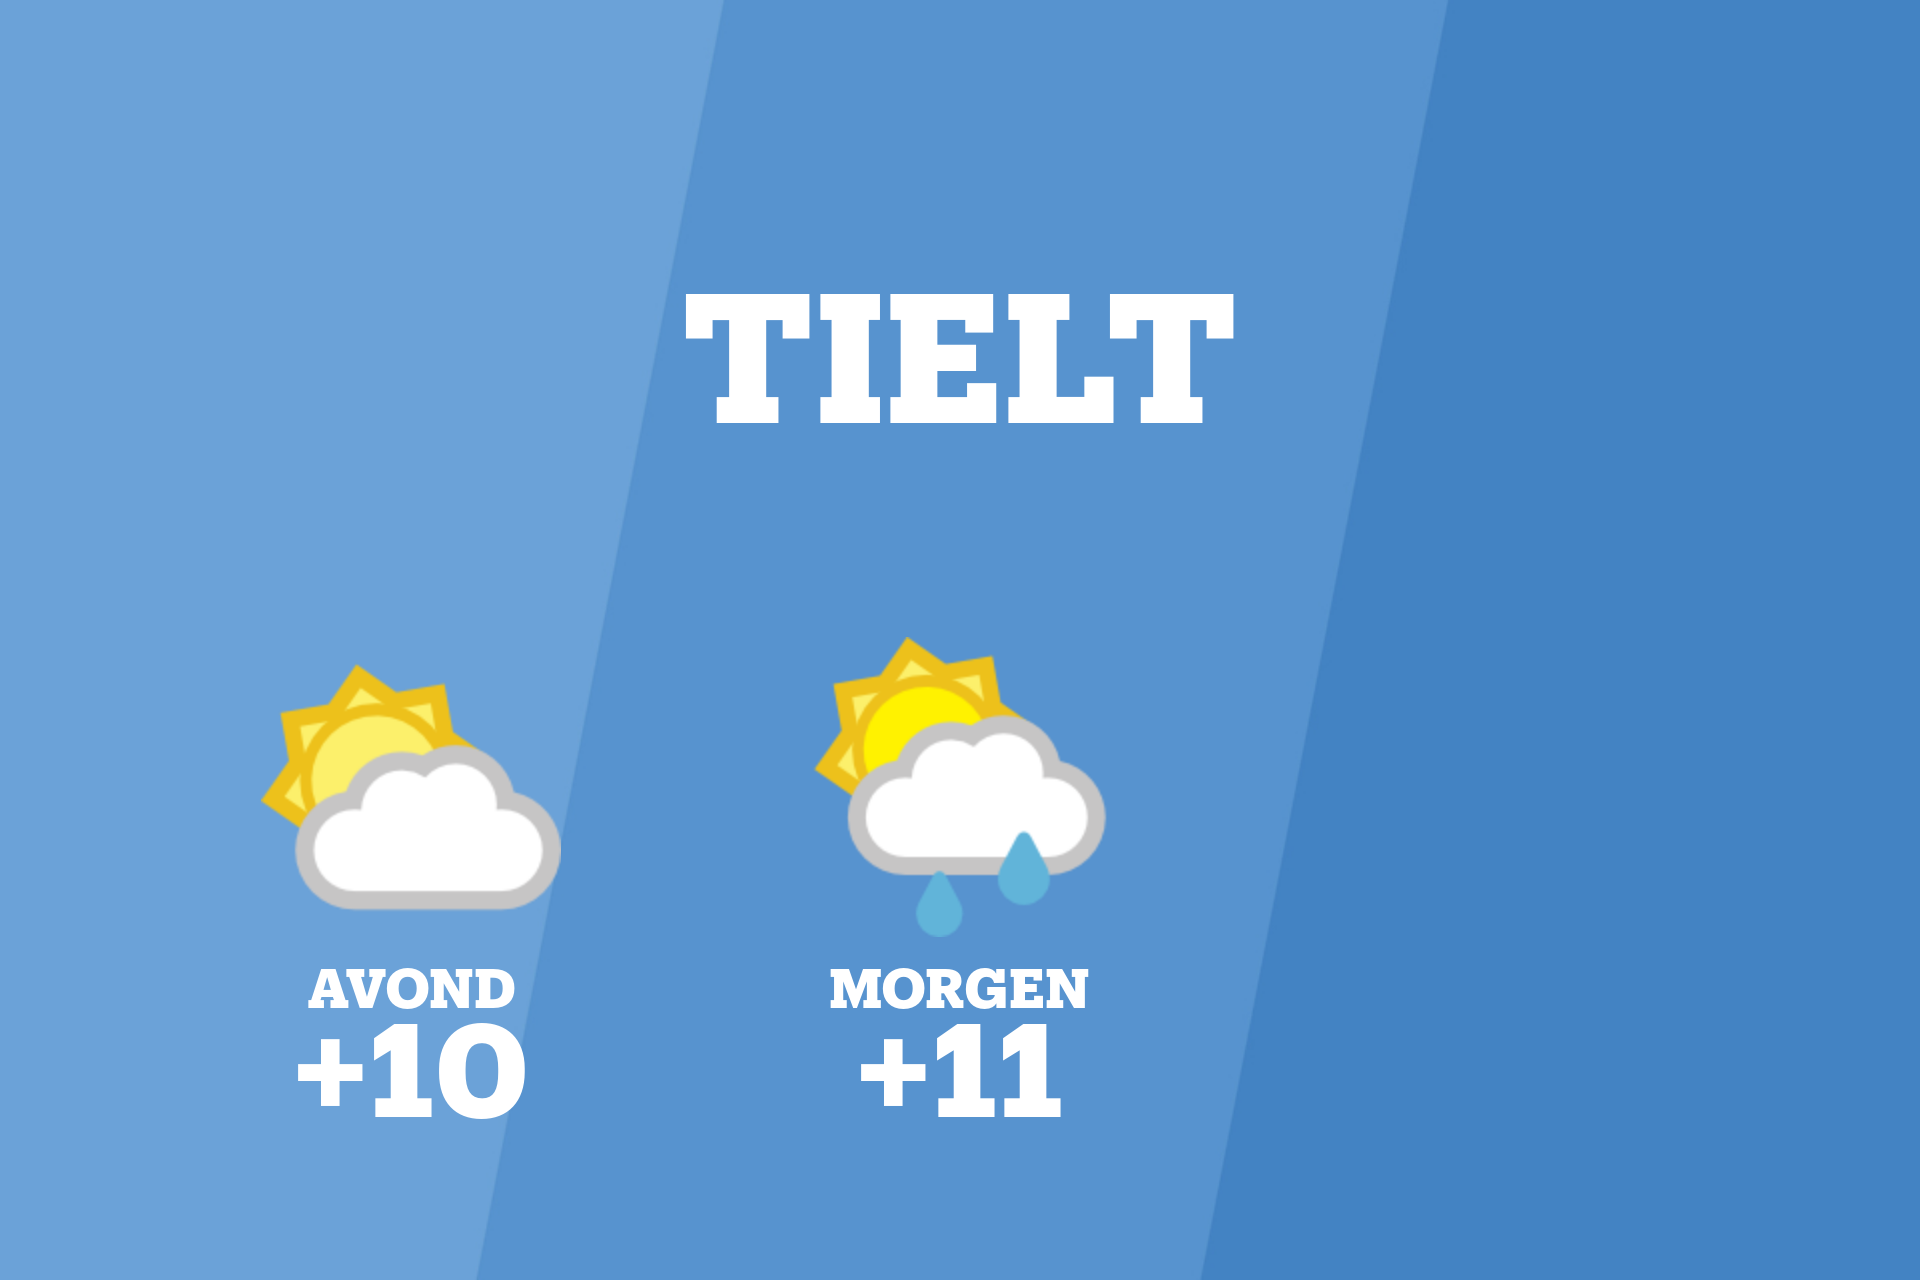 Vanavond kans op gedeeltelijk bewolkt weer in Tielt